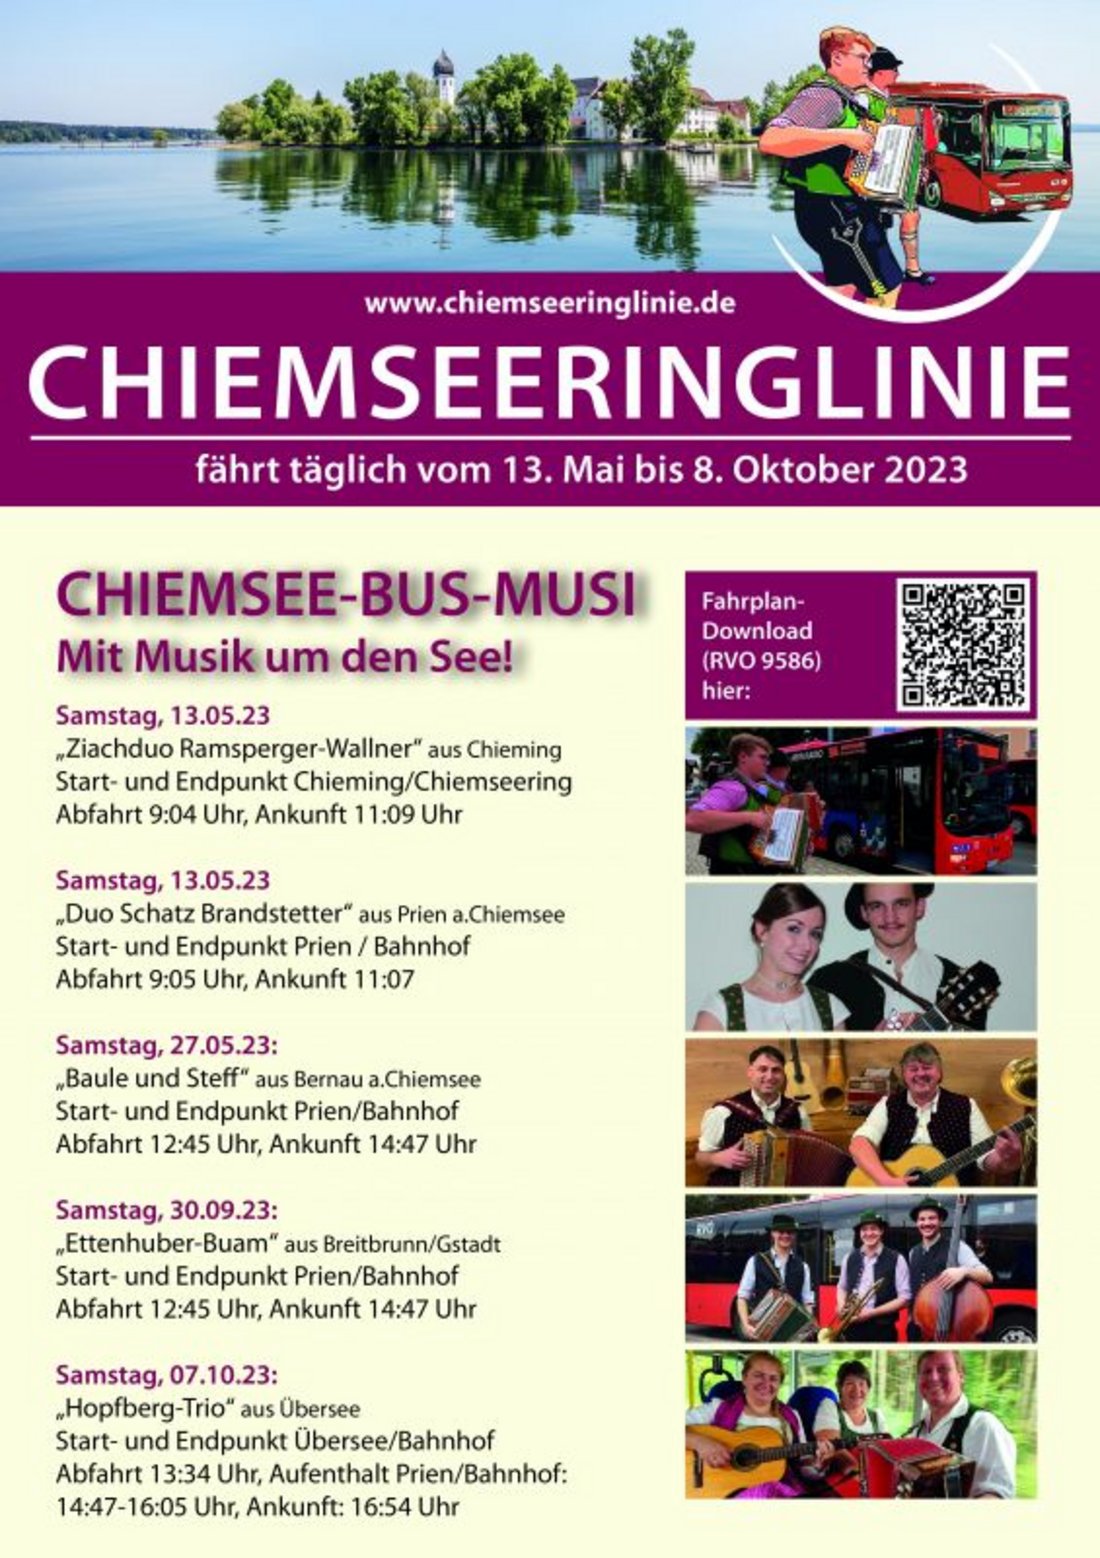 Die Chiemsee-Bus-Musi: Mit Musik um den See!